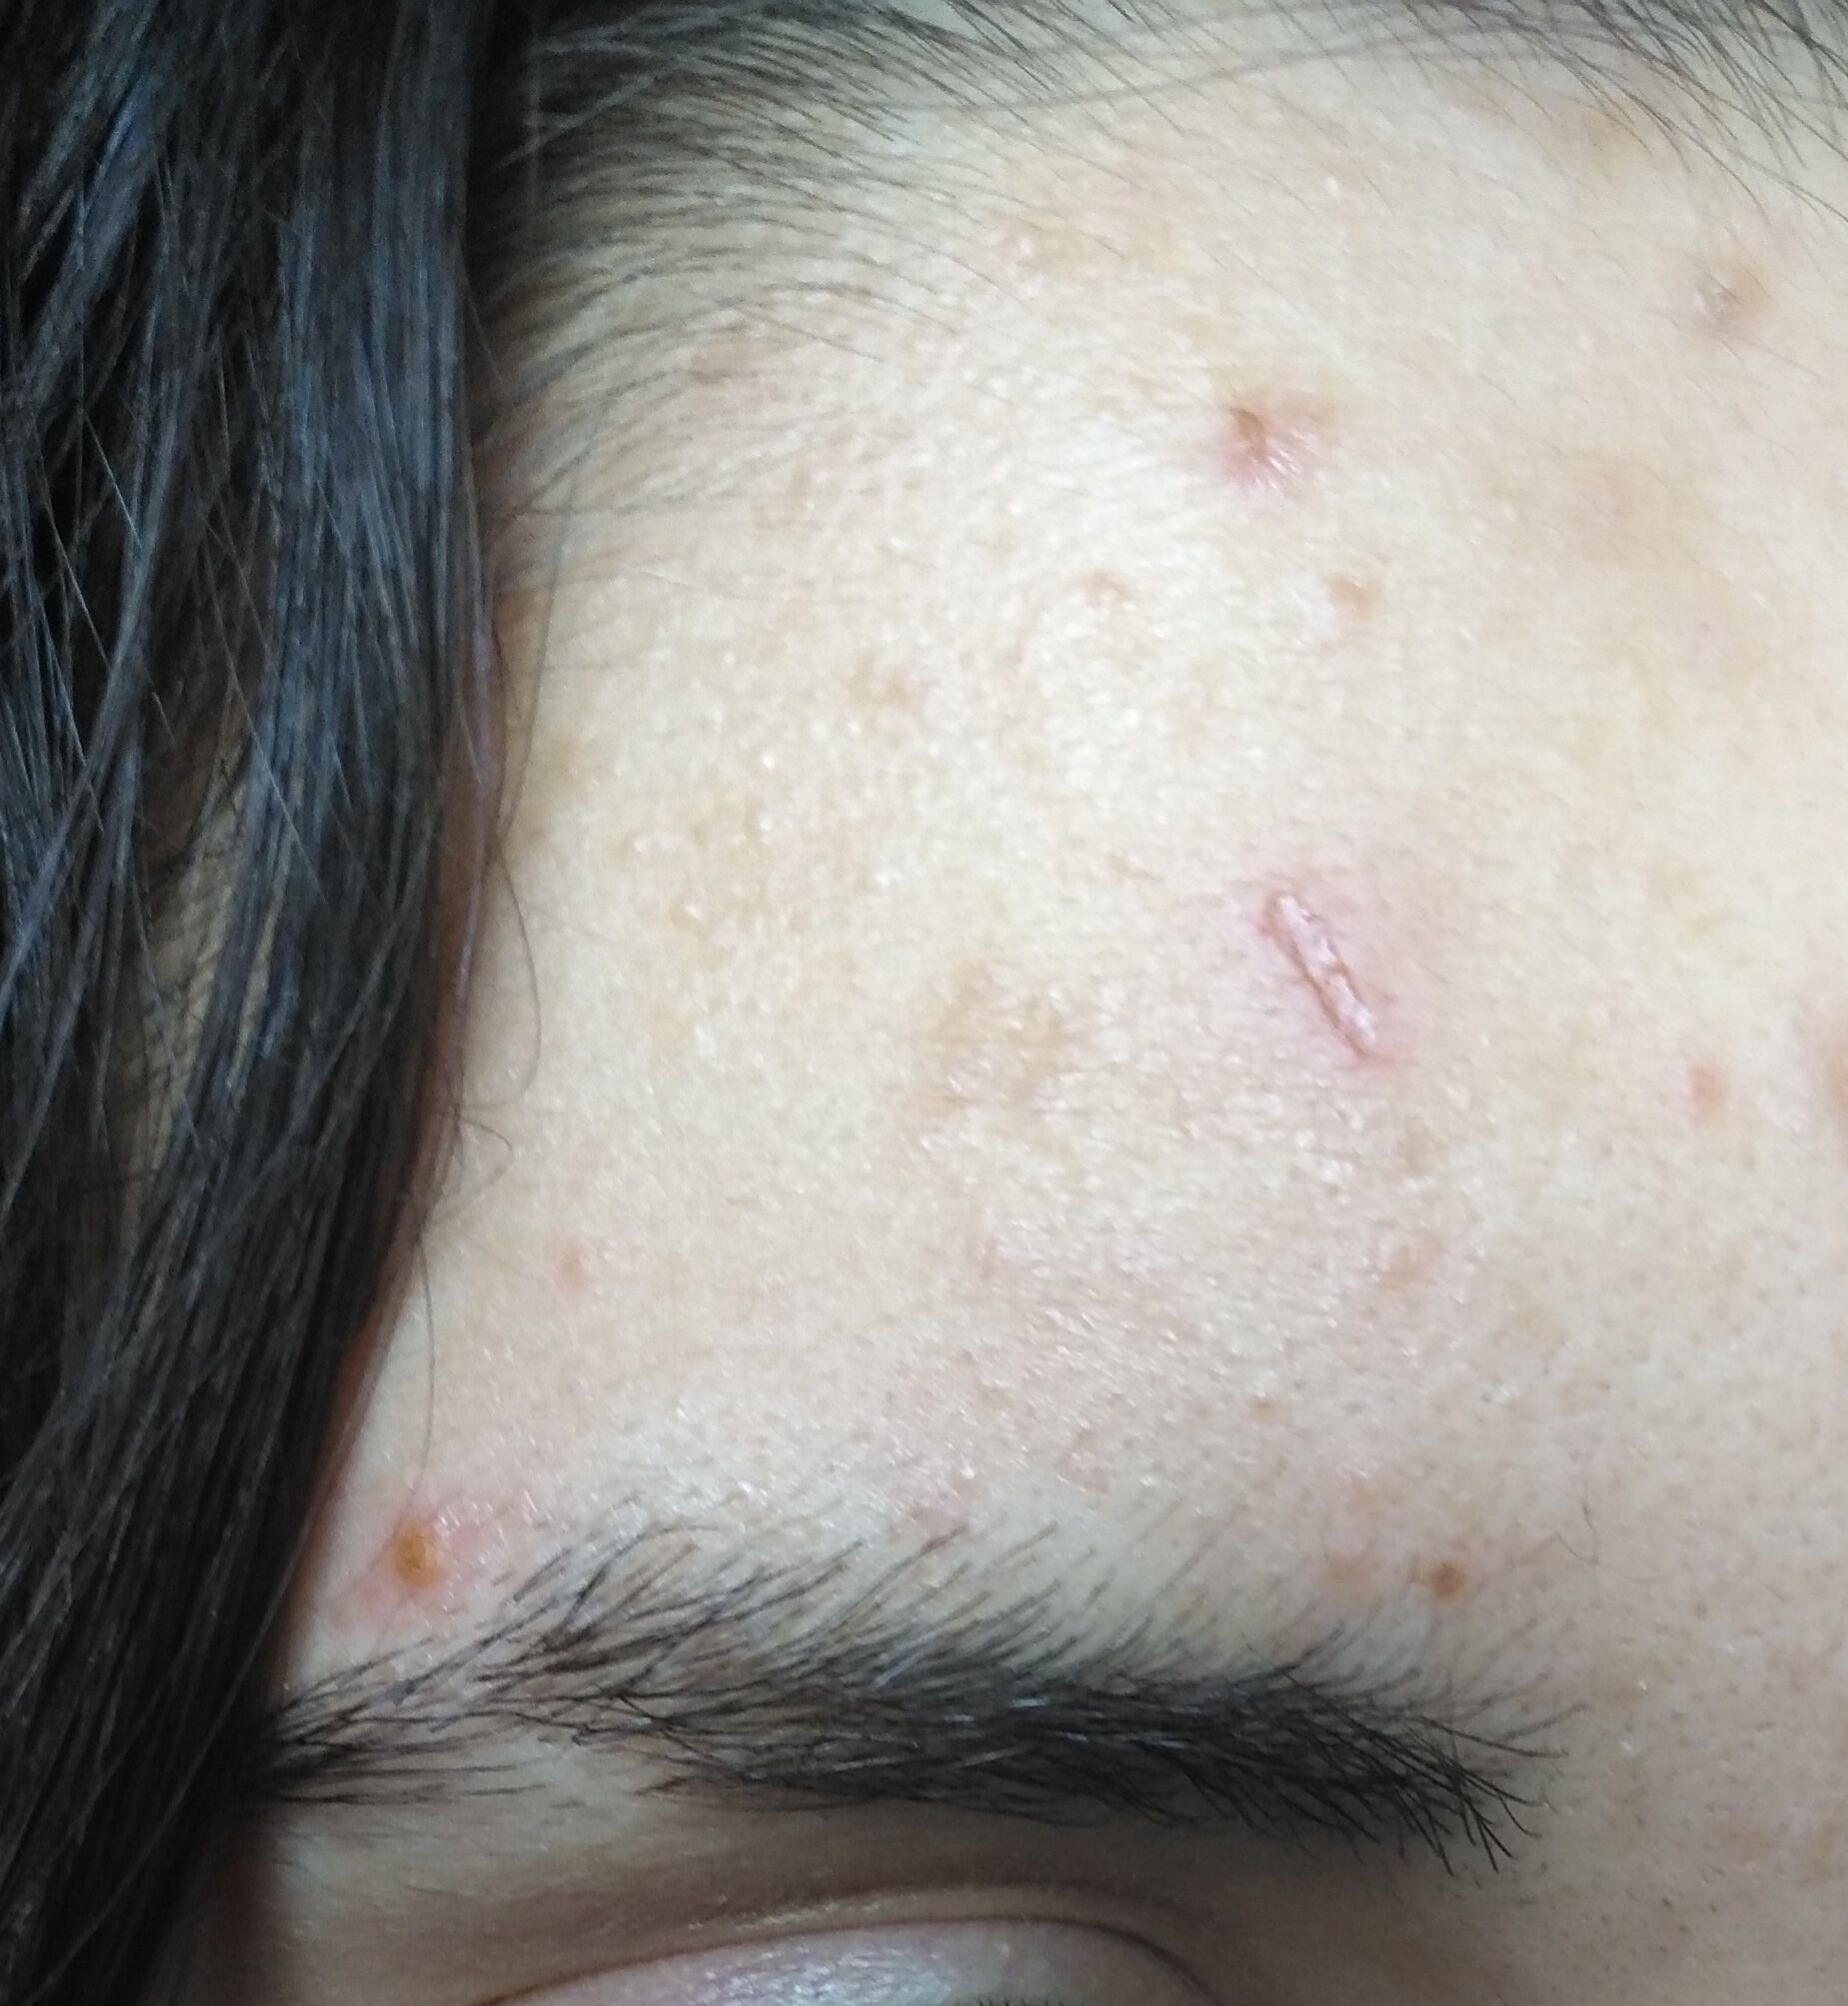 Atrophic Scar In Forehead Scar Treatments Forum